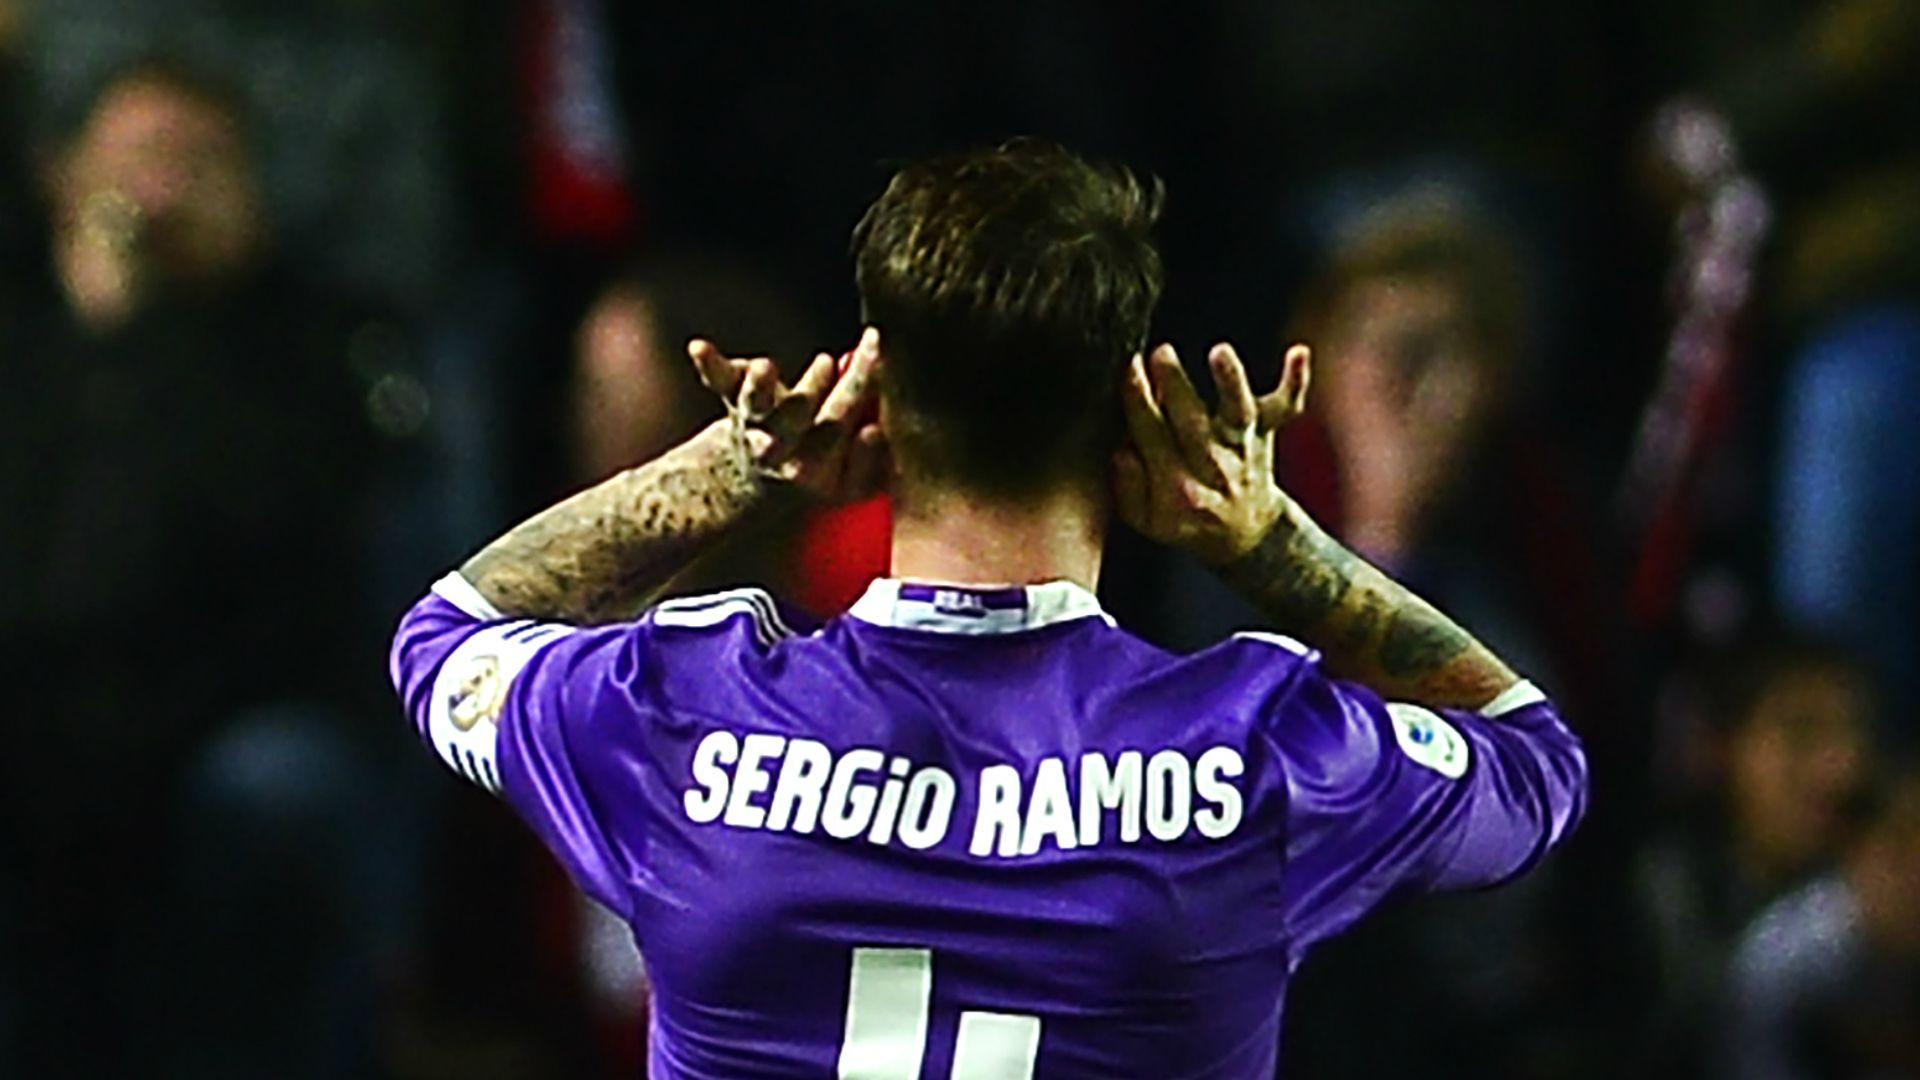 Real Madrid back Ramos in Sevilla celebration row